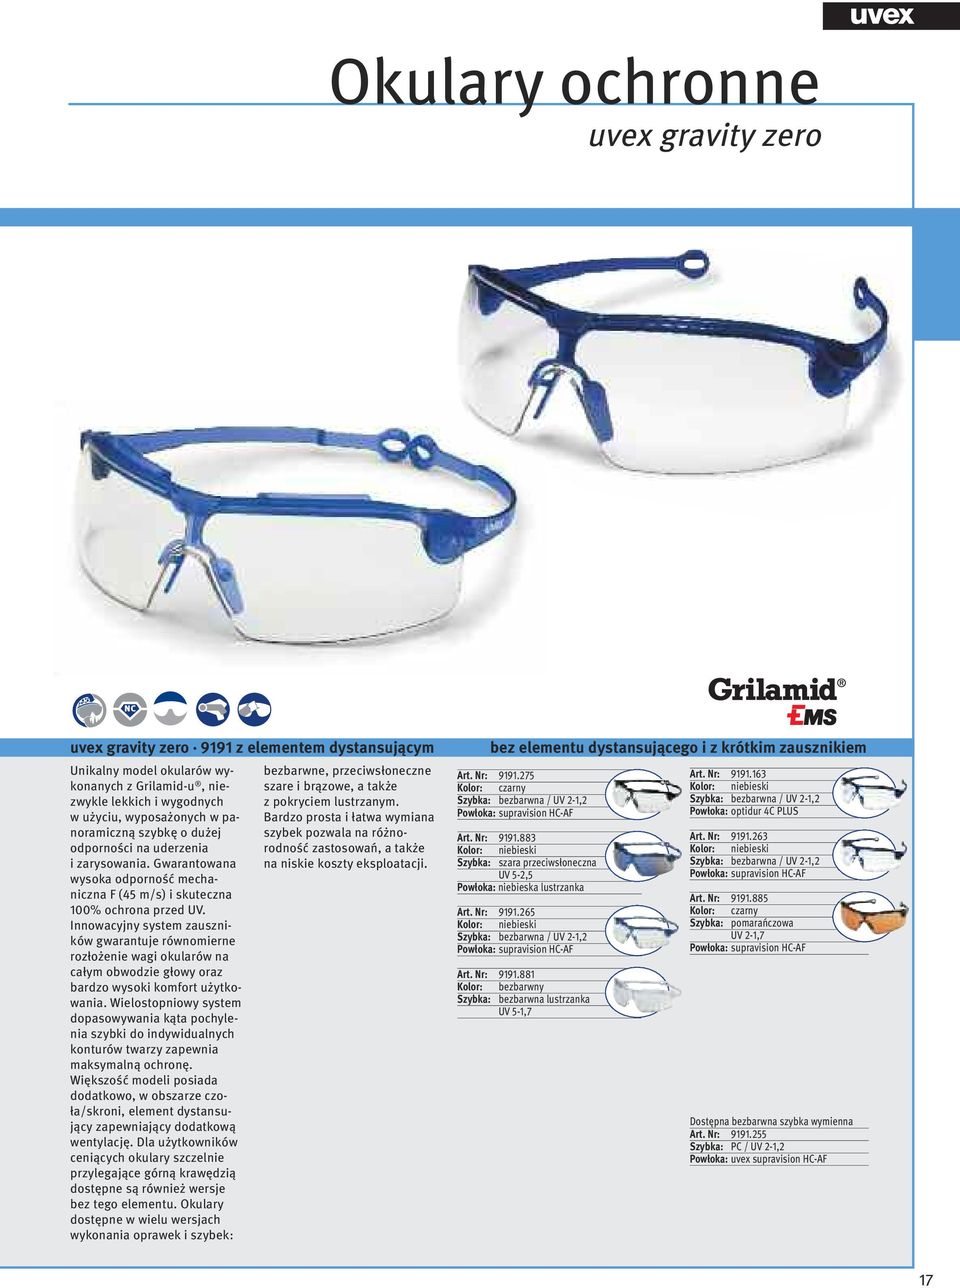 Innowacyjny system zauszników gwarantuje równomierne rozłożenie wagi okularów na całym obwodzie głowy oraz bardzo wysoki komfort użytkowania.